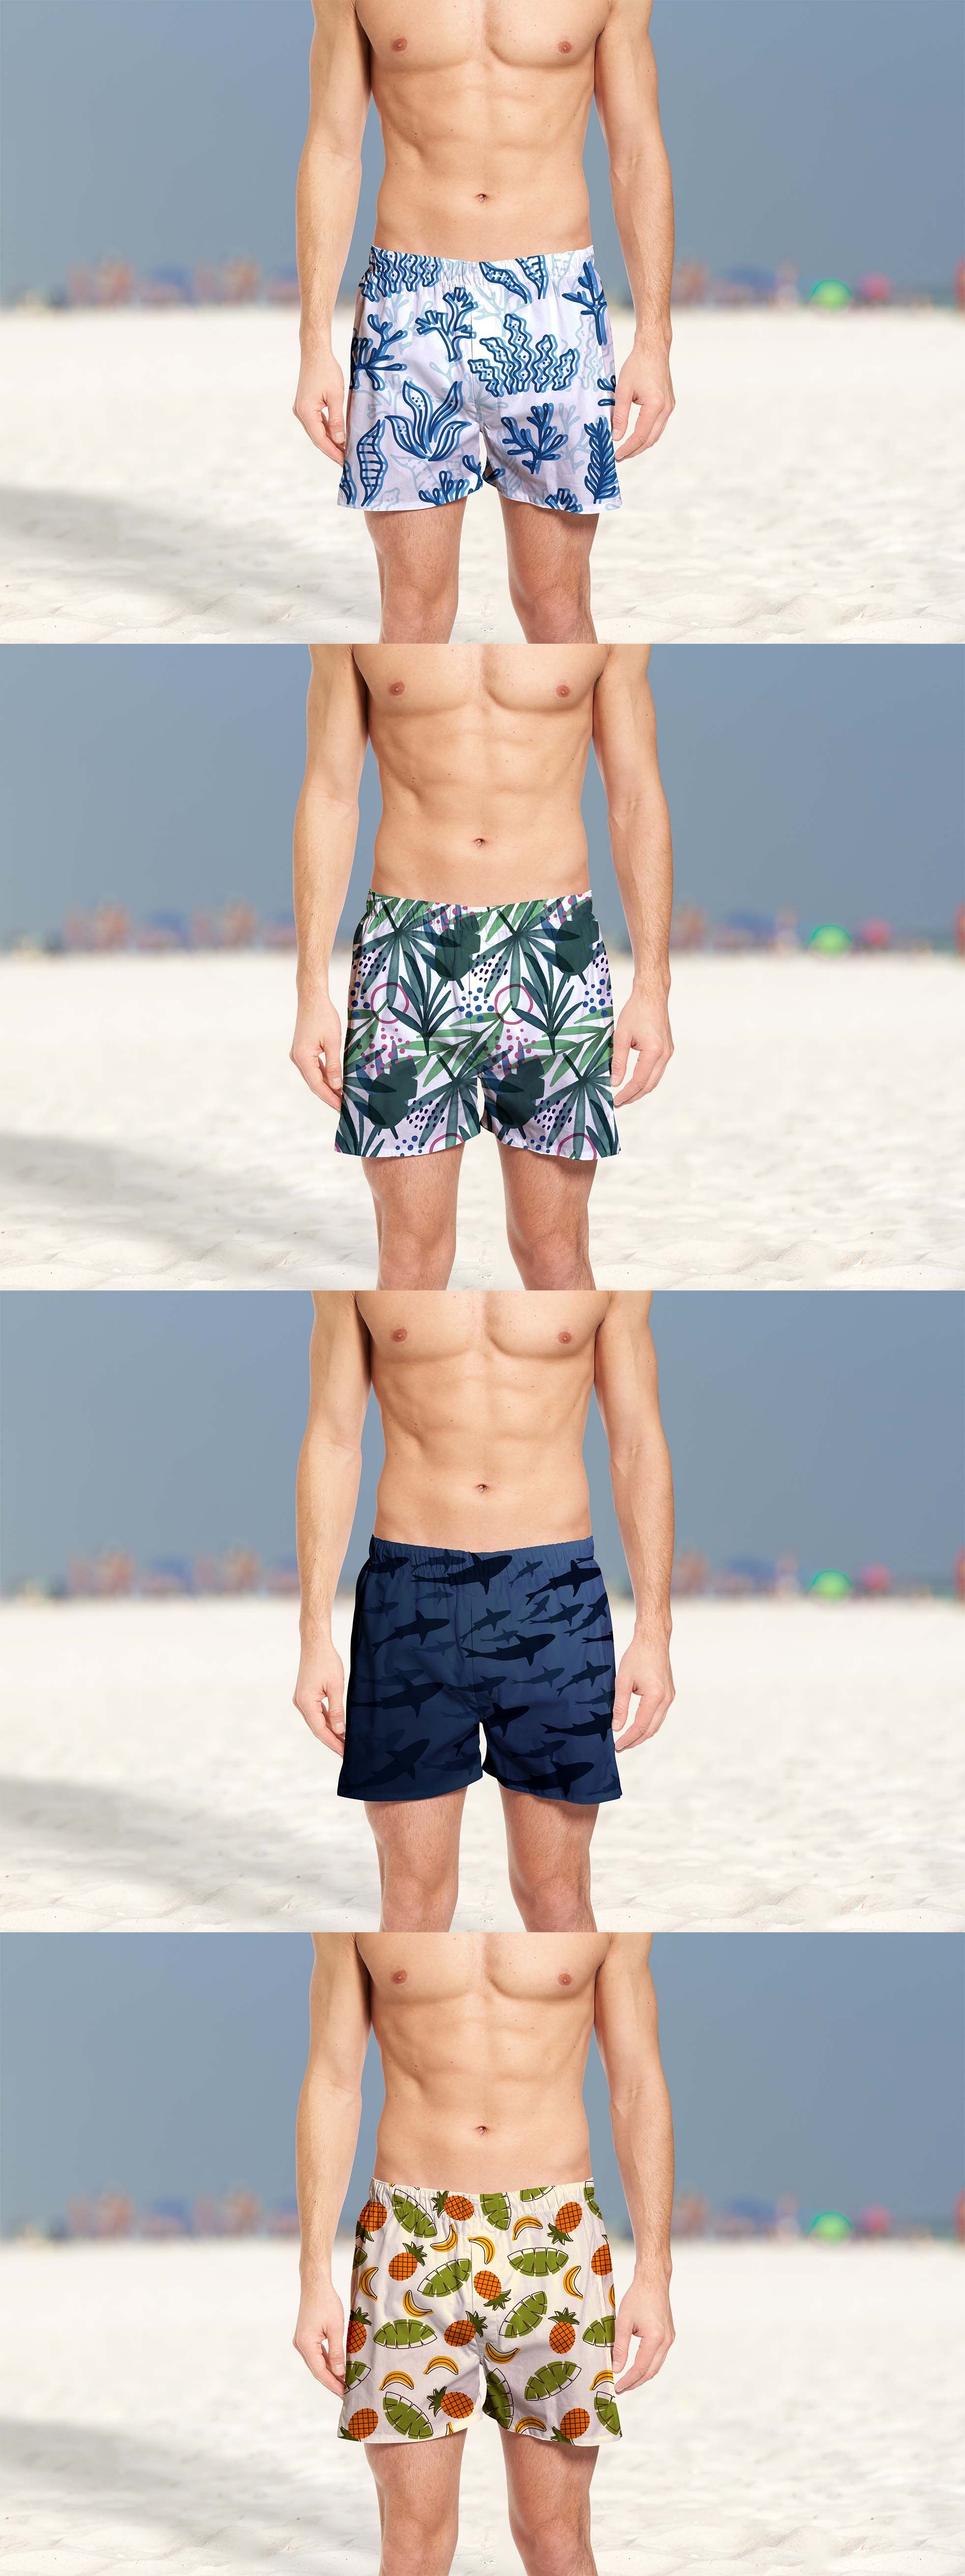 Дизайн рисунка для мужских шорт для плавания  - дизайнер nekrosss